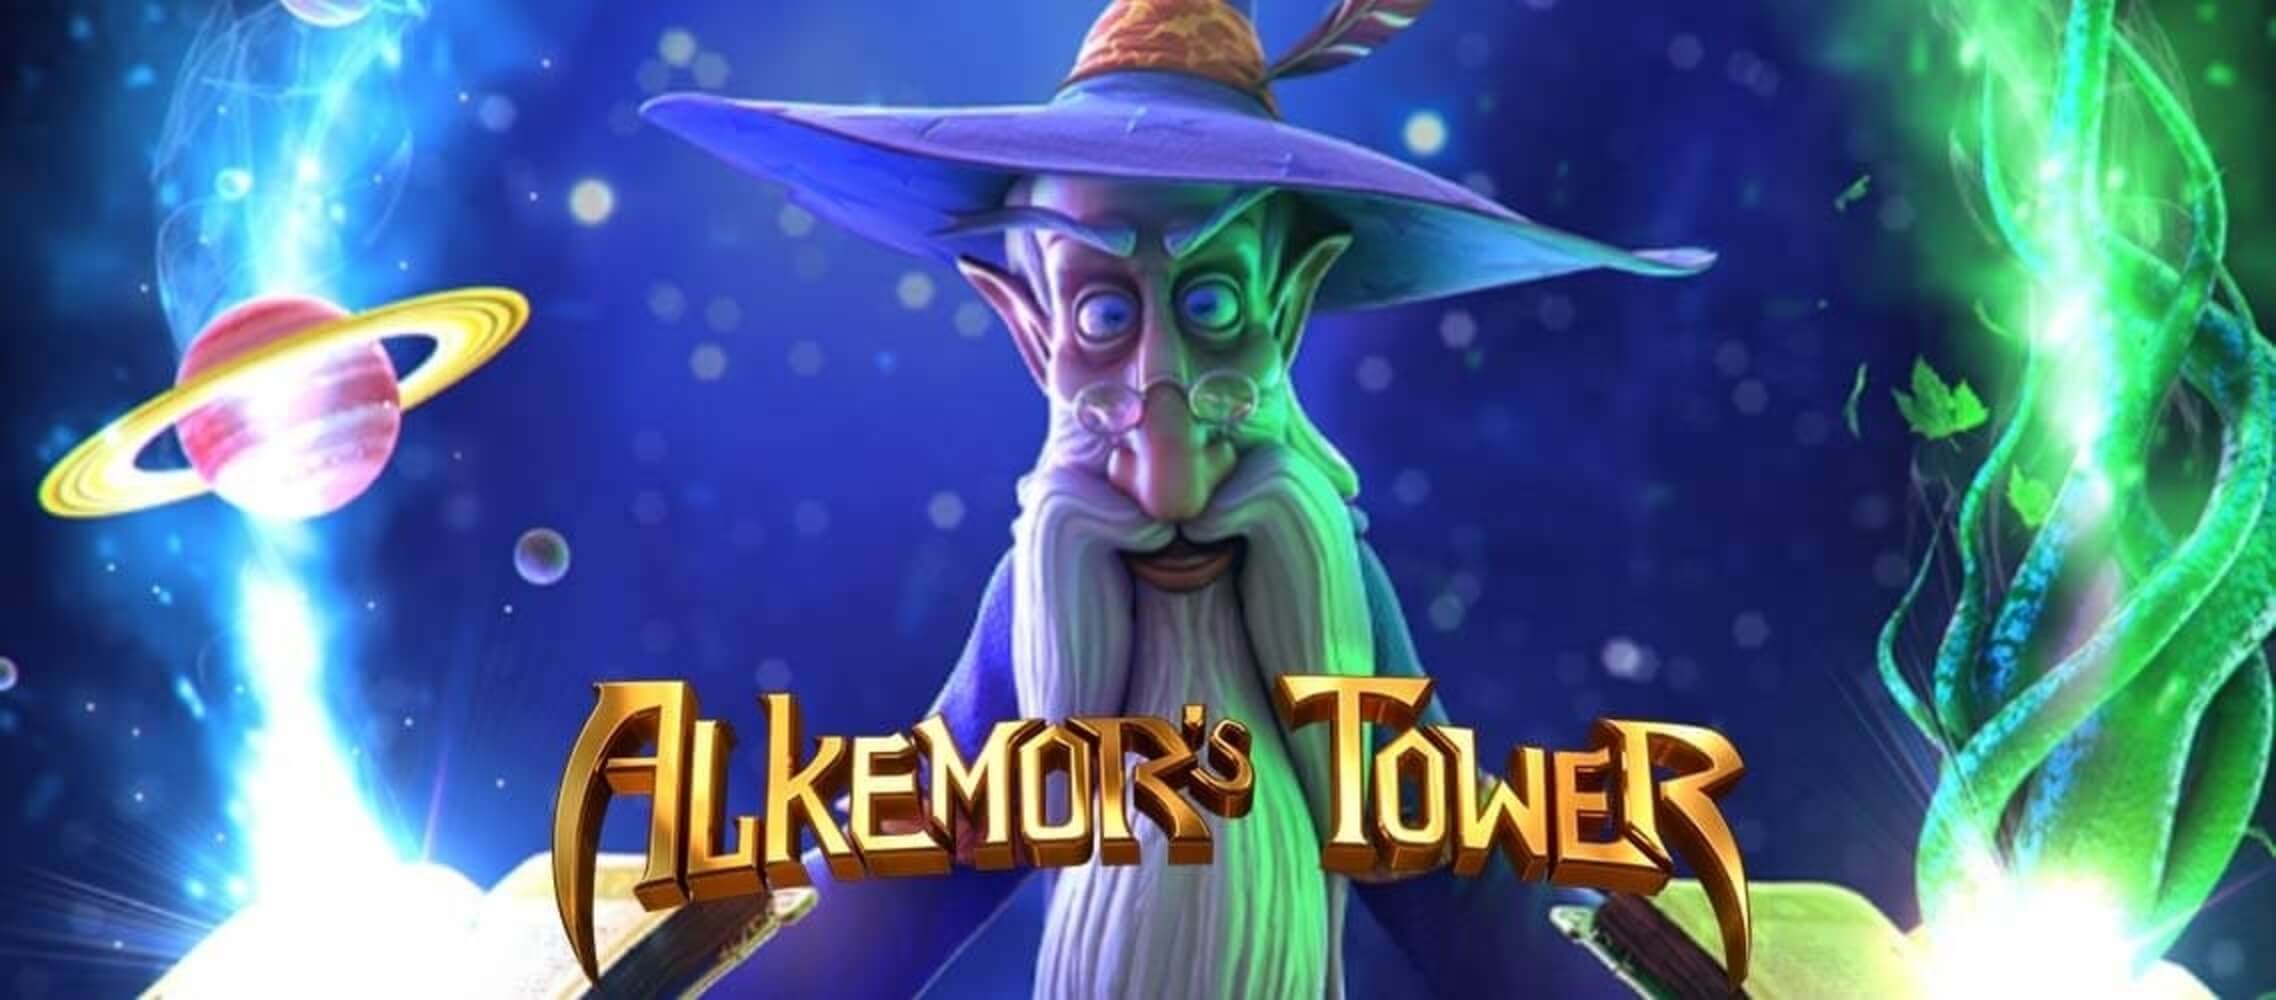 Alkemor’s Tower